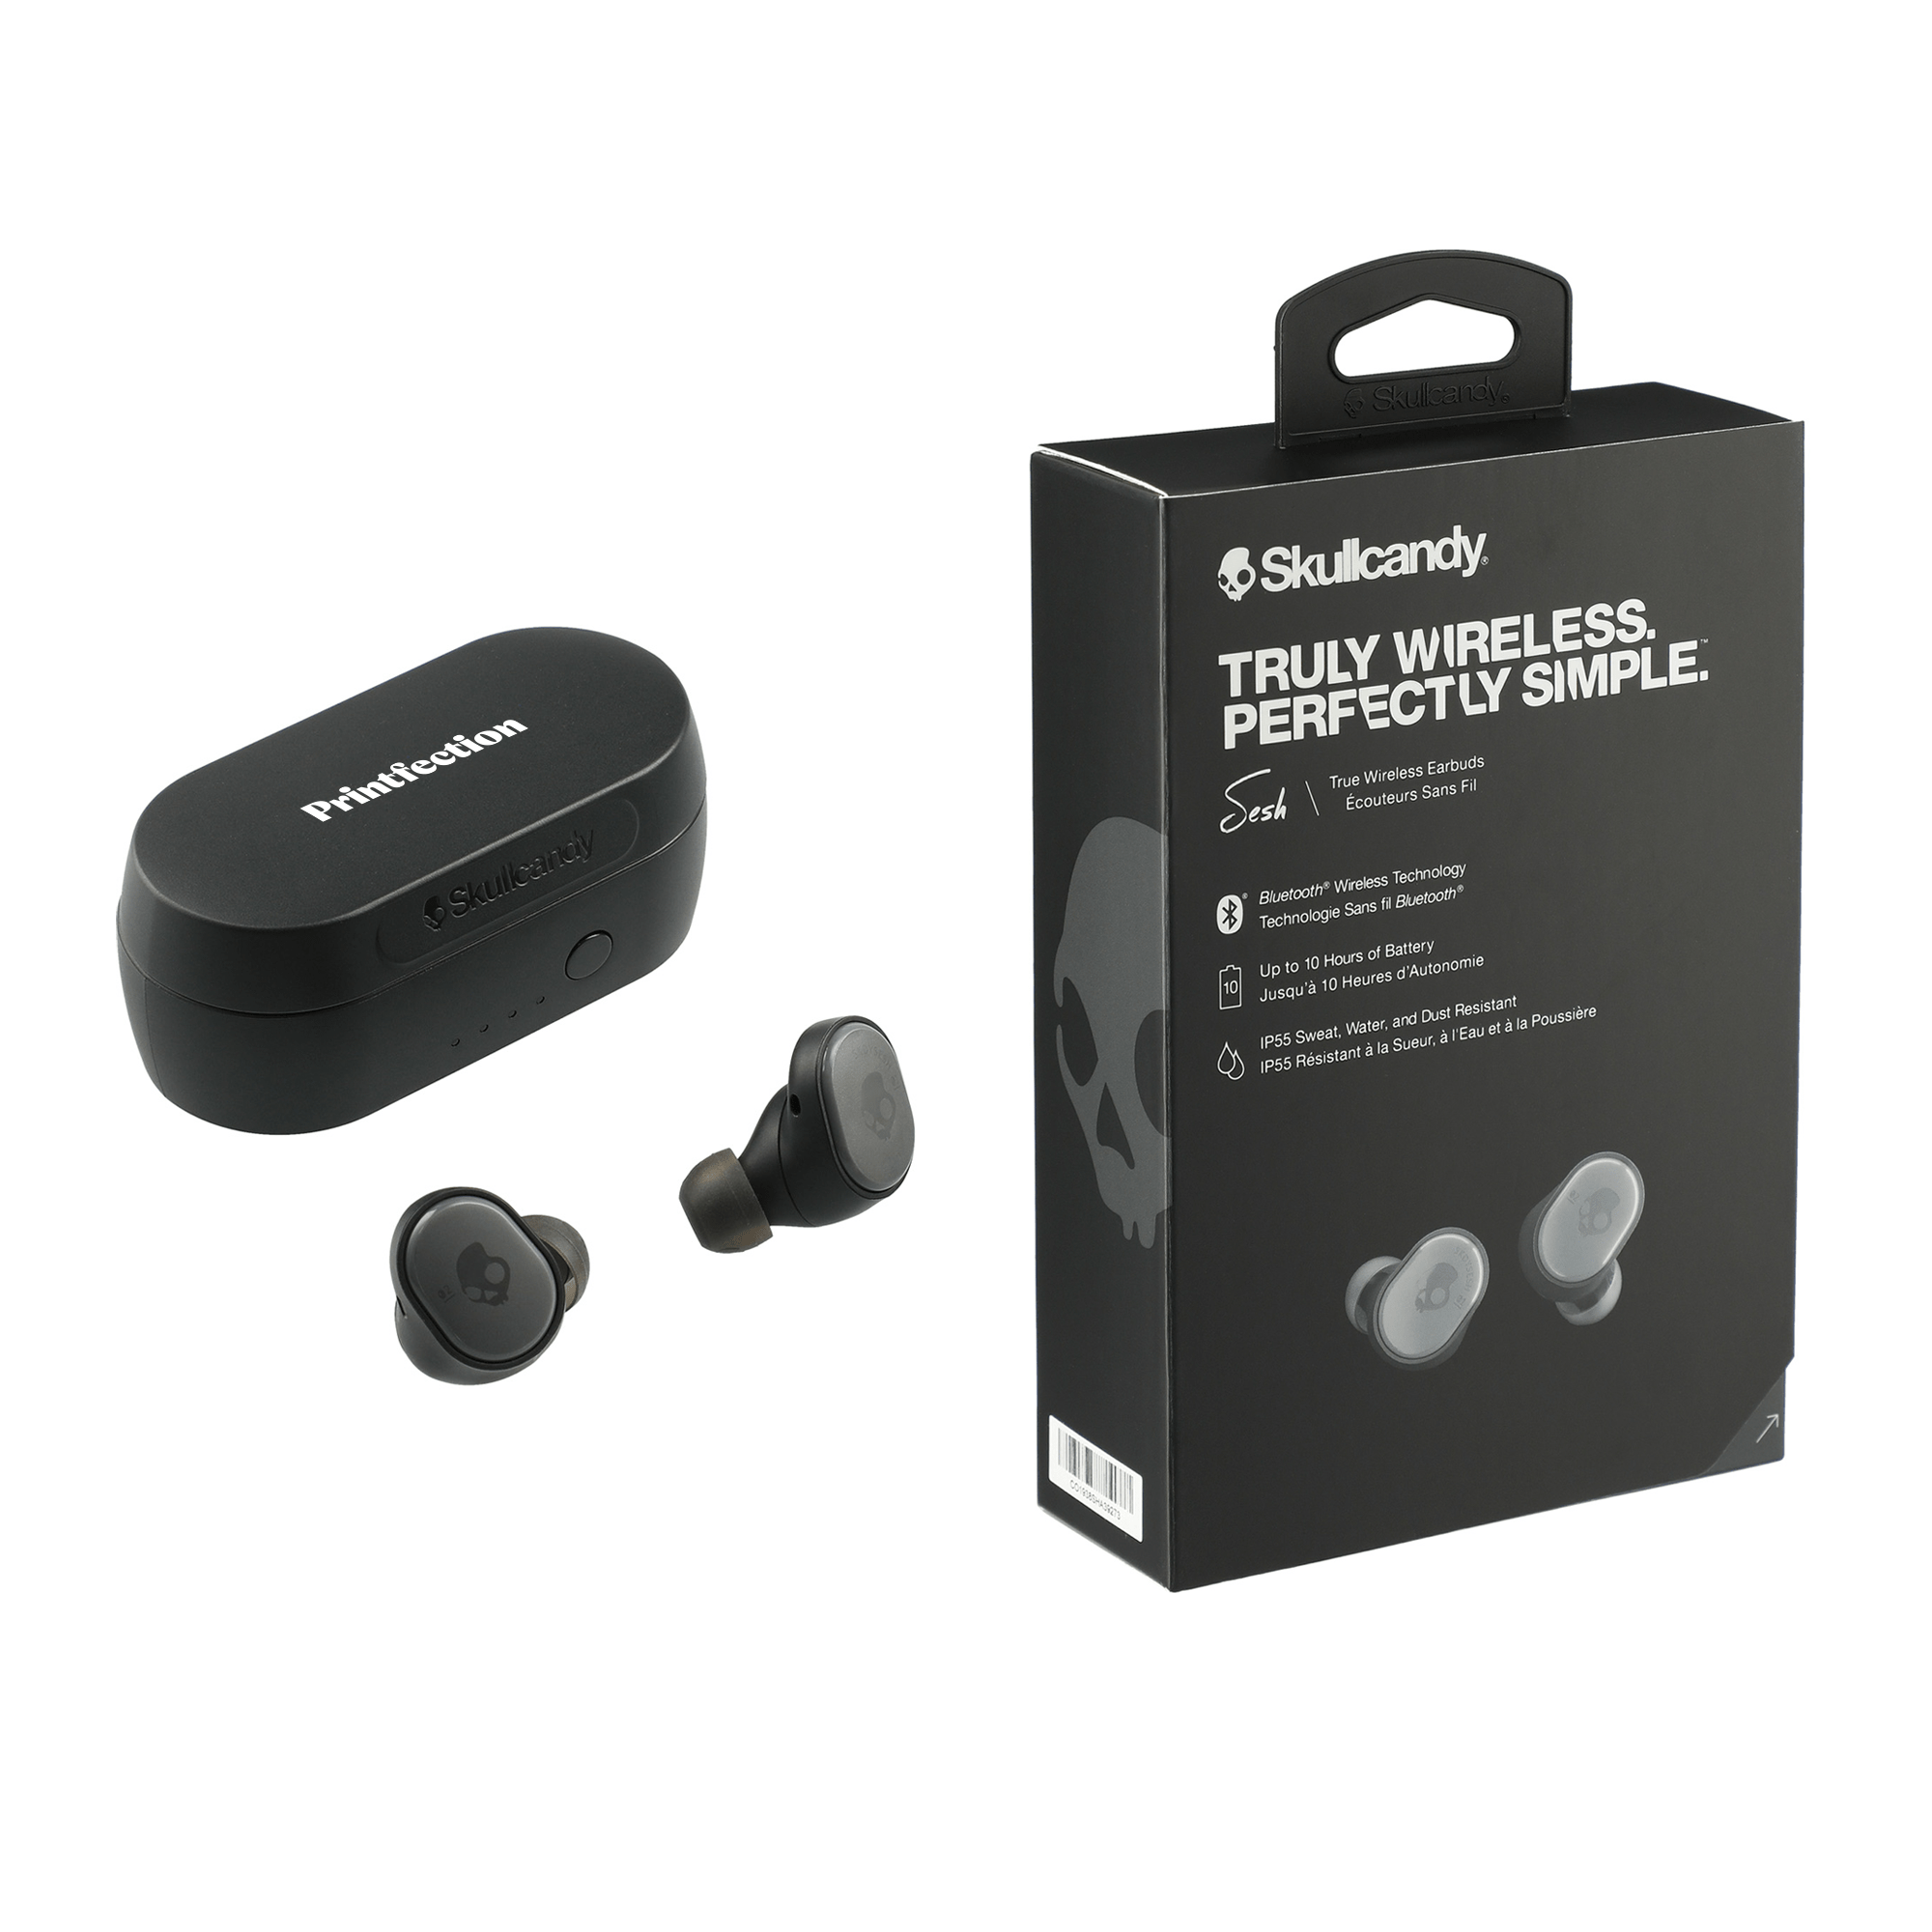 Skullcandy headphones make excellent corporate gifts